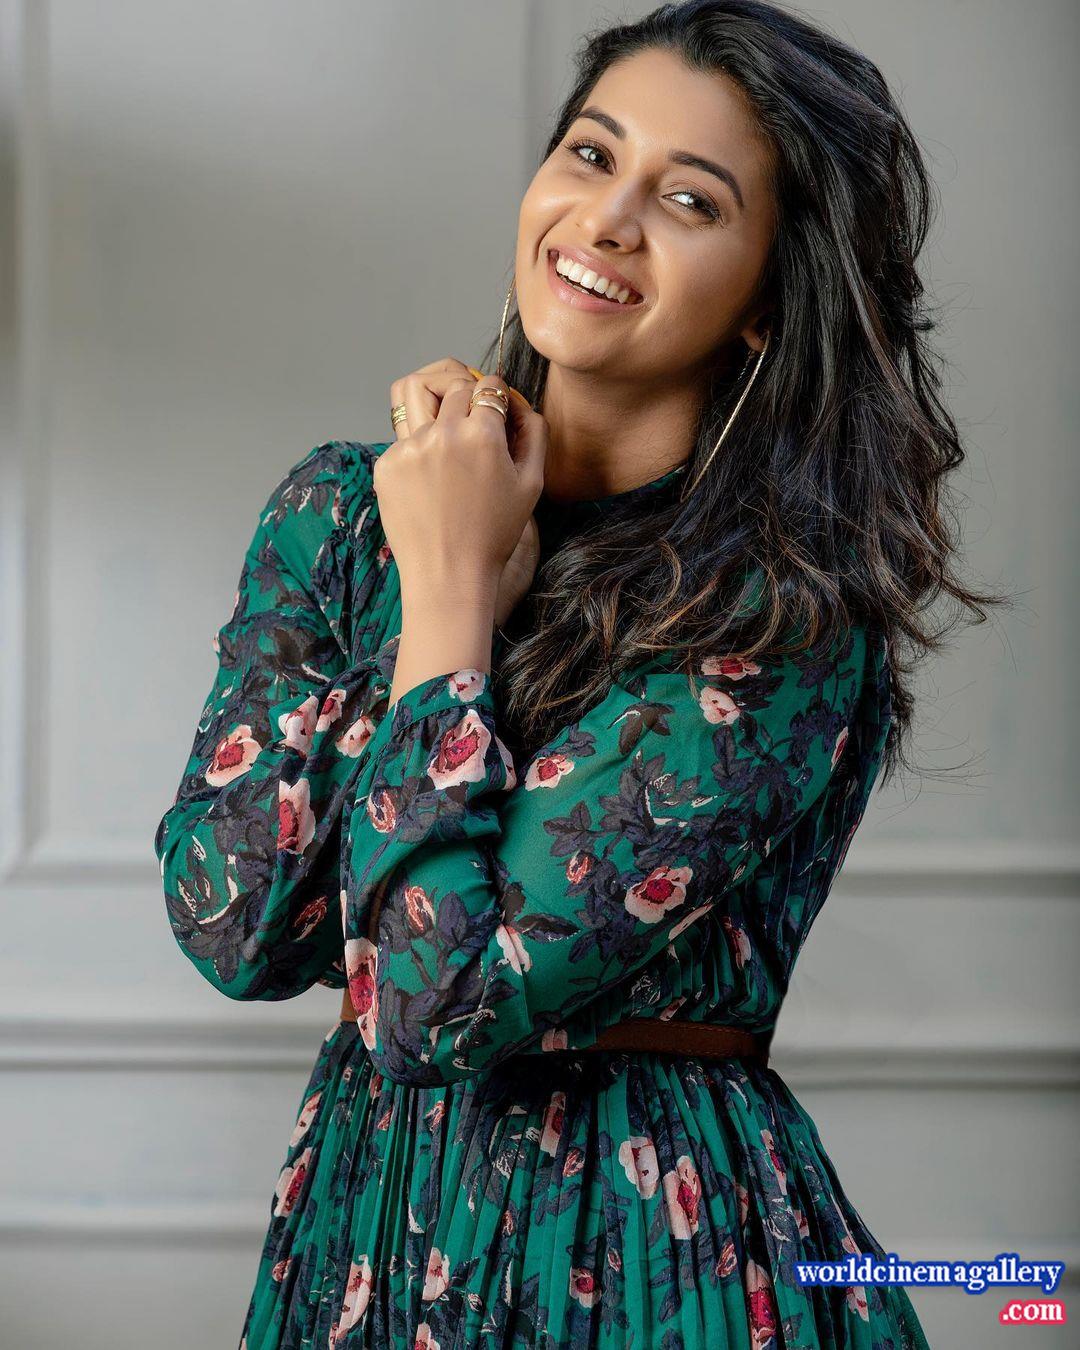 Priya Bhavani Shankar